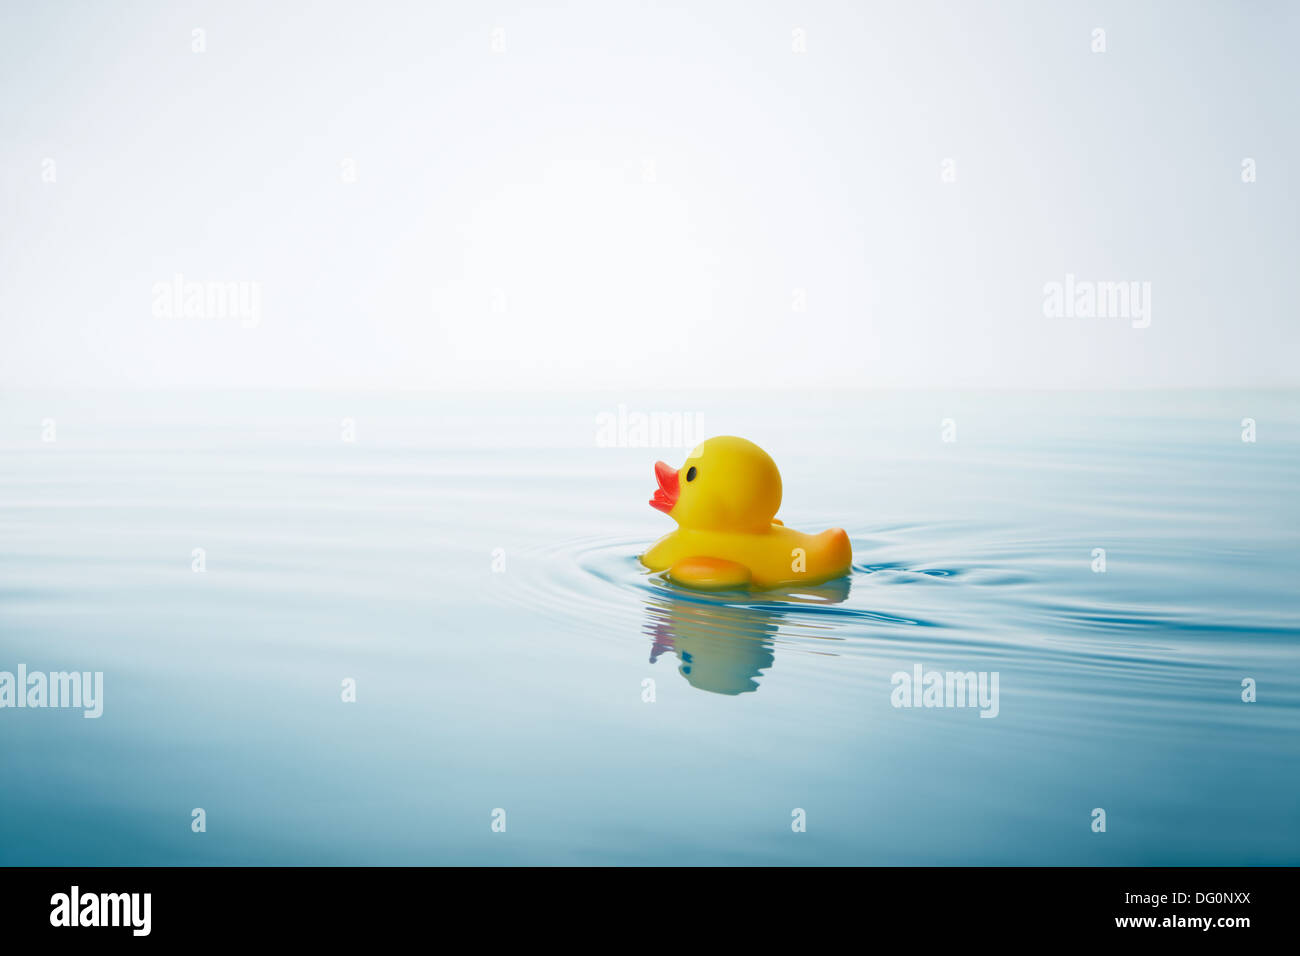 Canard en caoutchouc jaune nager sur l'eau avec des vagues et ondulations Banque D'Images